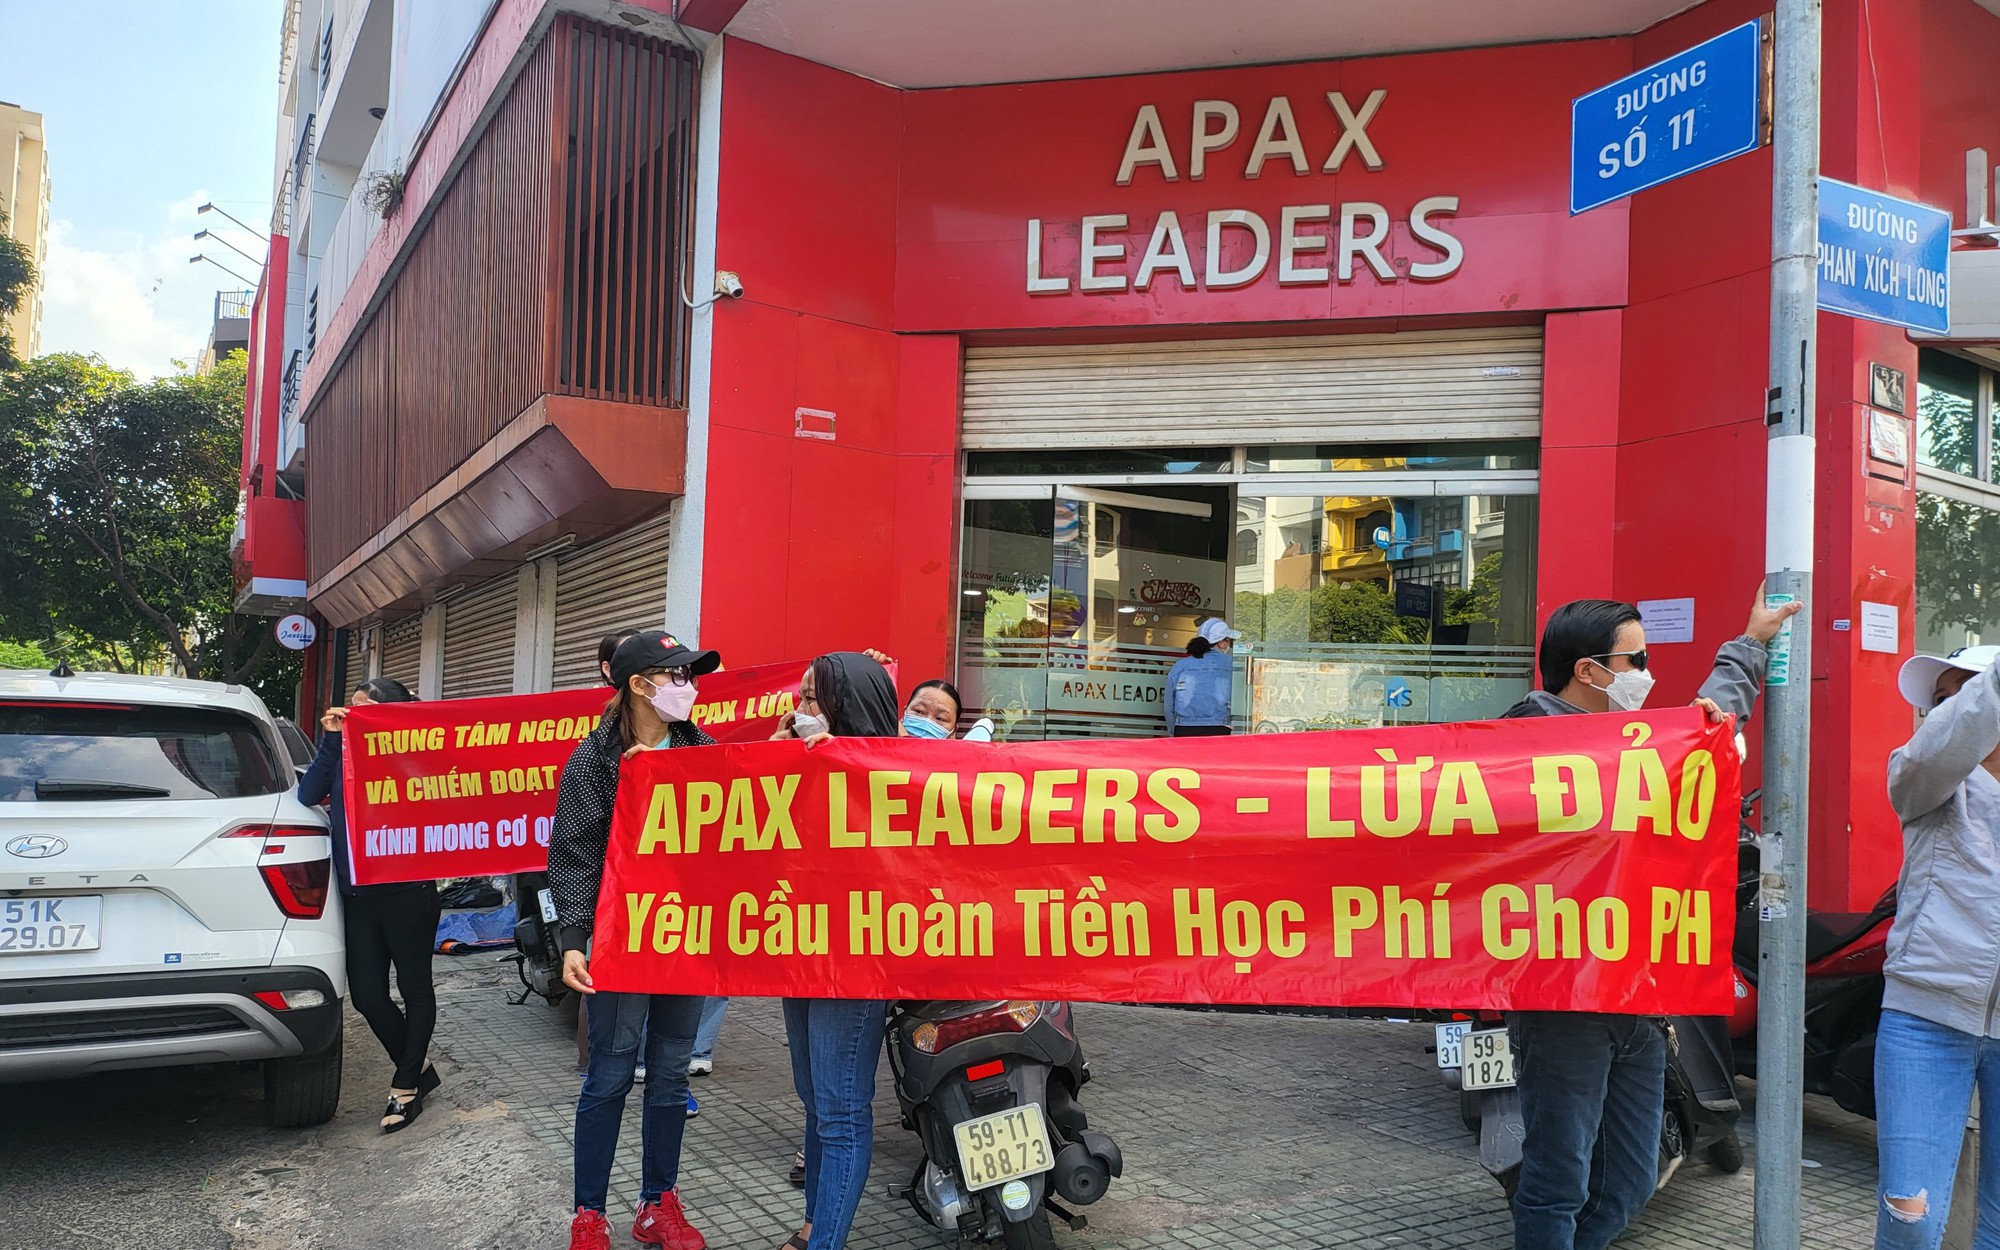 Vụ Apax Leaders bị tố "bùng" học phí: Sở GDĐT TP.HCM đã chuyển hồ sơ cho công an